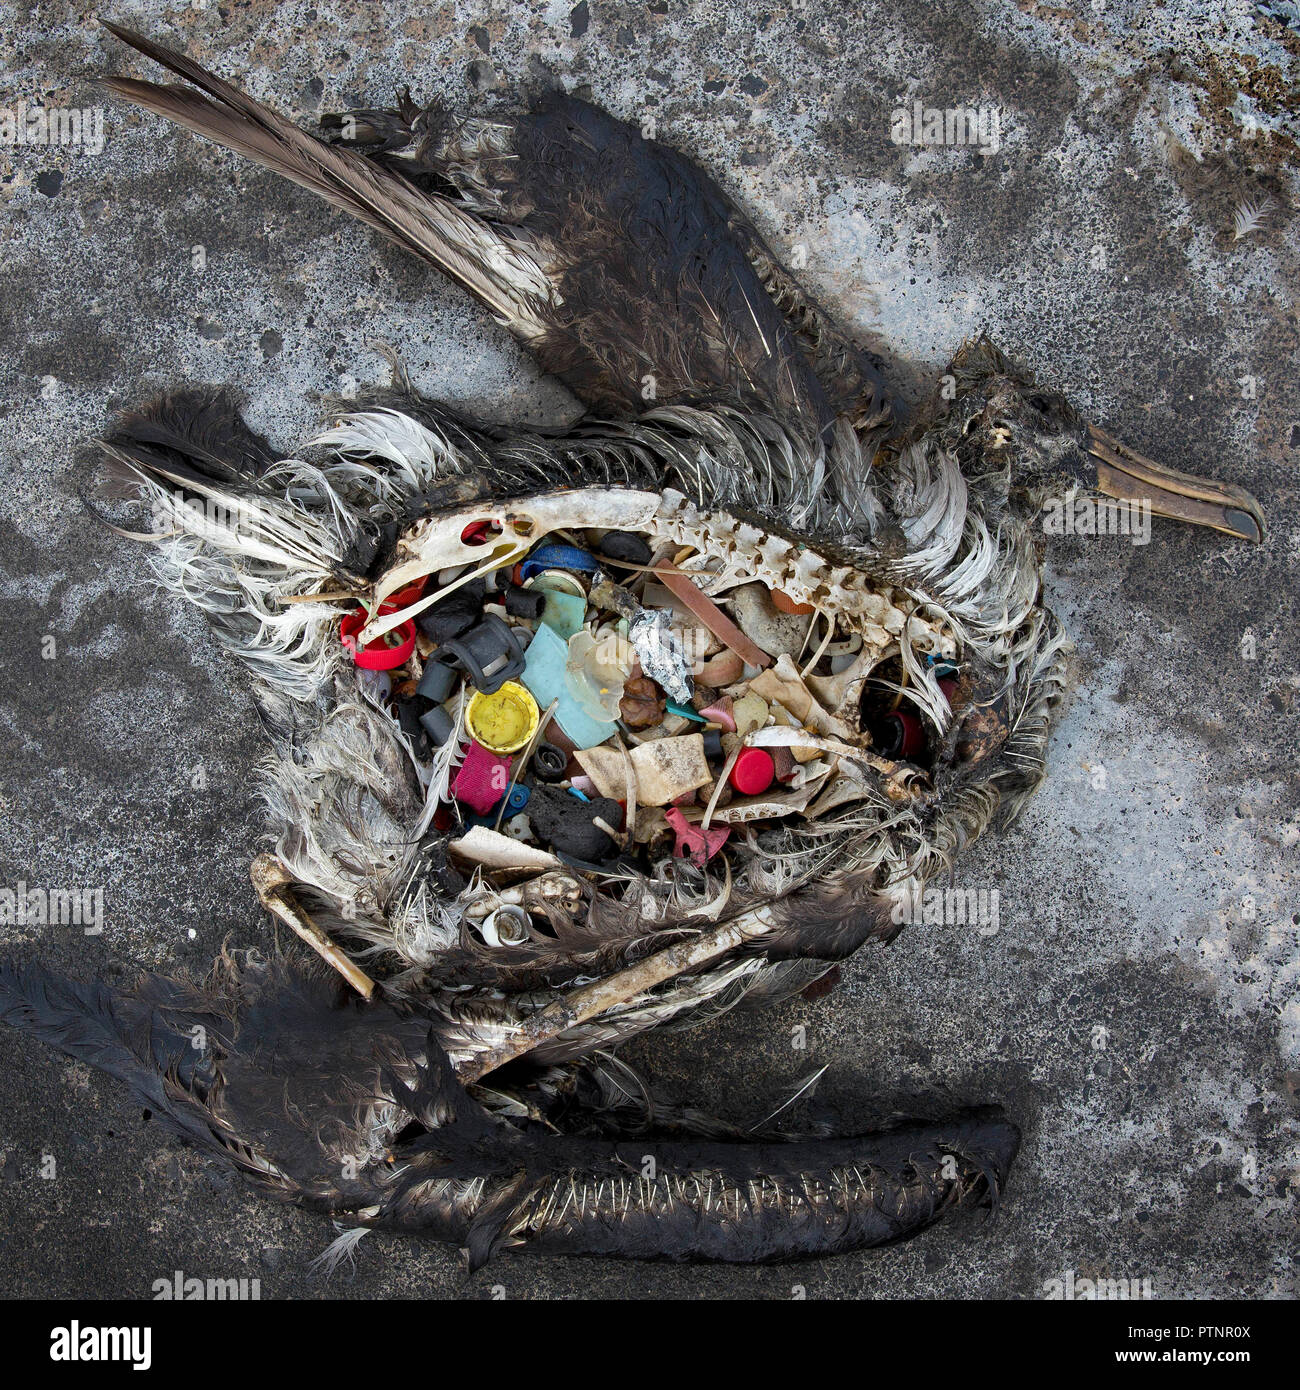 Un albatros à pieds noirs poussin avec du plastique dans son estomac se trouve mort sur l'atoll de Midway, dans le nord-ouest des îles Hawaii. L'atoll à distance où des milliers sont morts est maintenant un sanctuaire délicate pour des millions d'oiseaux. Midway se trouve au milieu d'une collection de débris à l'homme appelé la plaque de déchets du Pacifique Nord. Le long des chemins de Midway, il y a des piles de plumes à l'aide d'anneaux de plastique dans le milieu - vestiges d'oiseaux qui sont morts avec le plastique dans leurs tripes. Chaque année, l'Office élimine environ 20 tonnes de plastiques et les débris qui lave à terre à partir des eaux environnantes. Banque D'Images